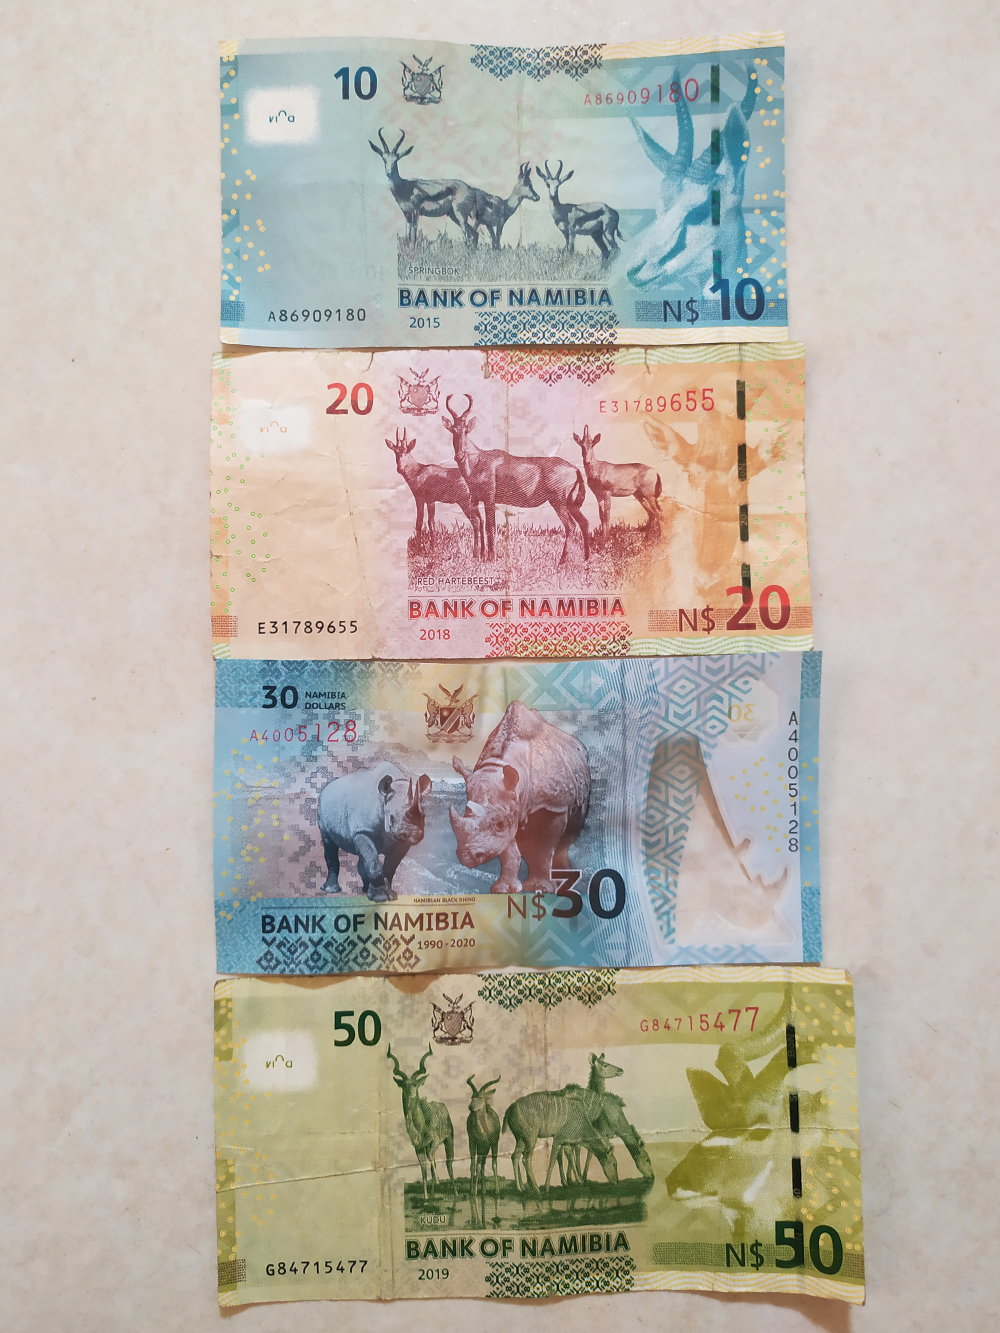 Когда я жил в Намибии, намибийский доллар стоил 4,6⁠—⁠4,8 ₽. В конце февраля курс рубля сильно упал. Я прочувствовал это на себе уже после того, как улетел из Намибии в ЮАР: все стало дороже в полтора раза